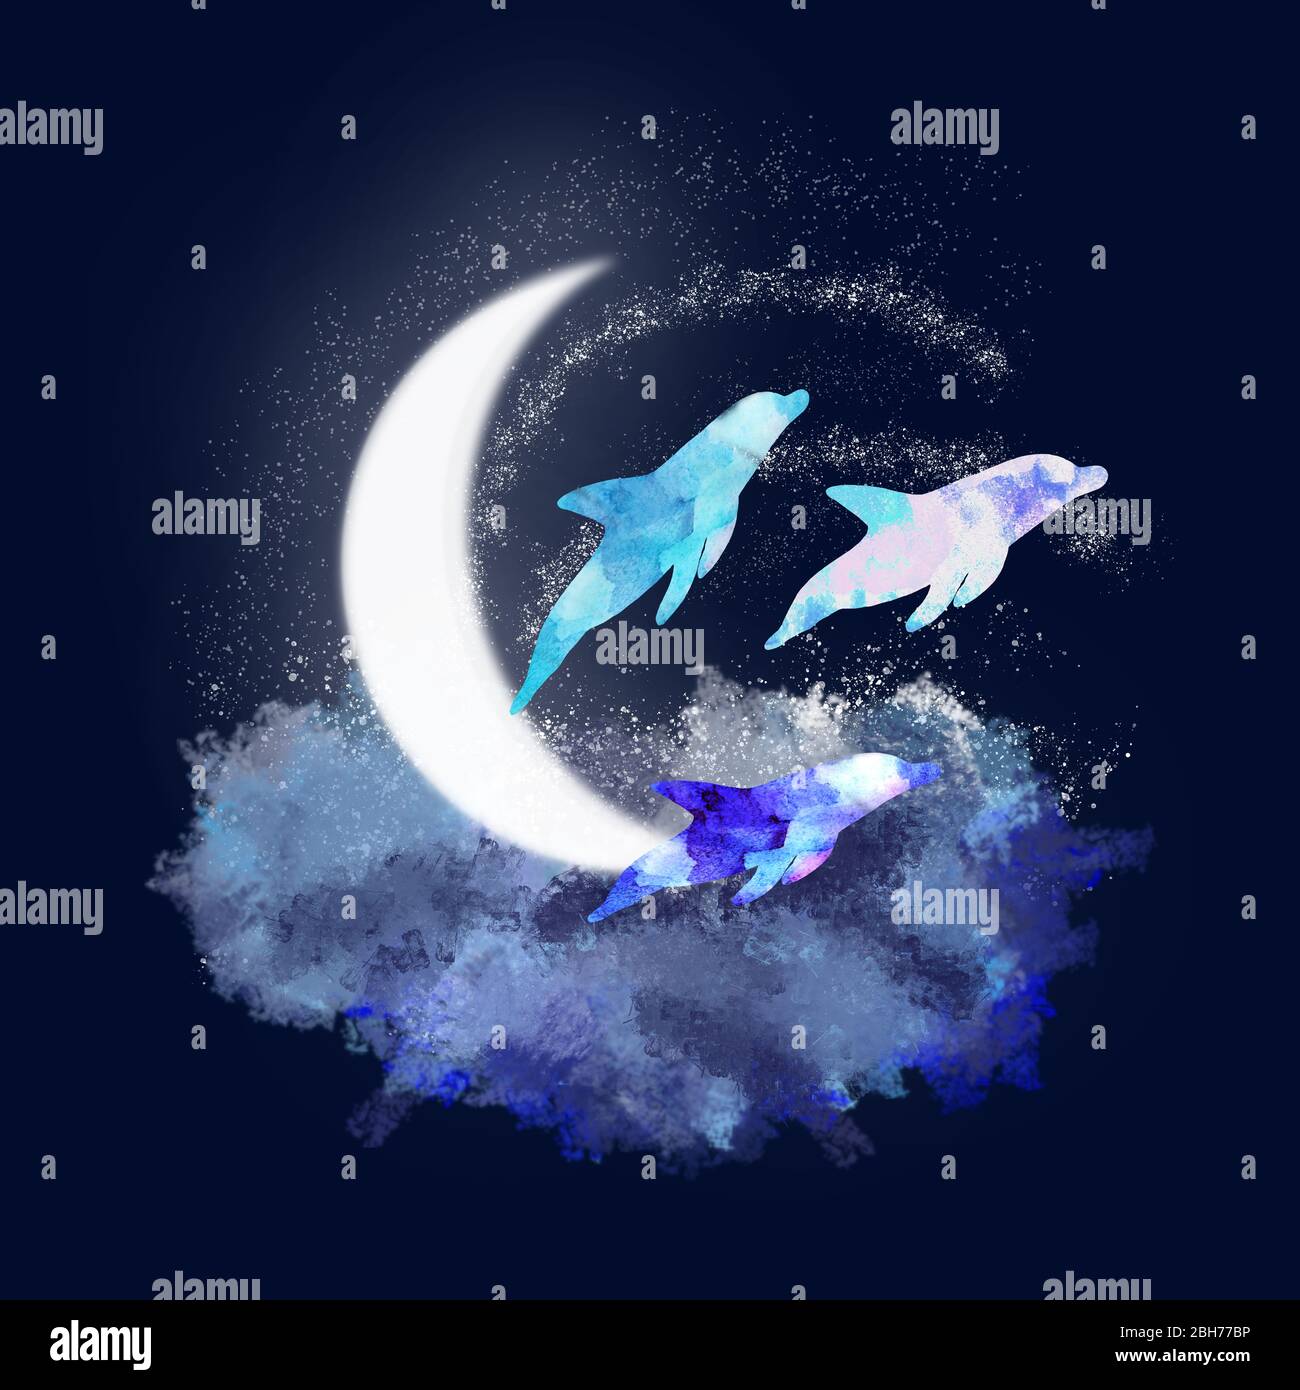 Drei Delphine im Mondlicht. Wolken und Sterne oder Meereswellen und Spritzer. Mondnacht und Delfine schöne Illustration. Stockfoto